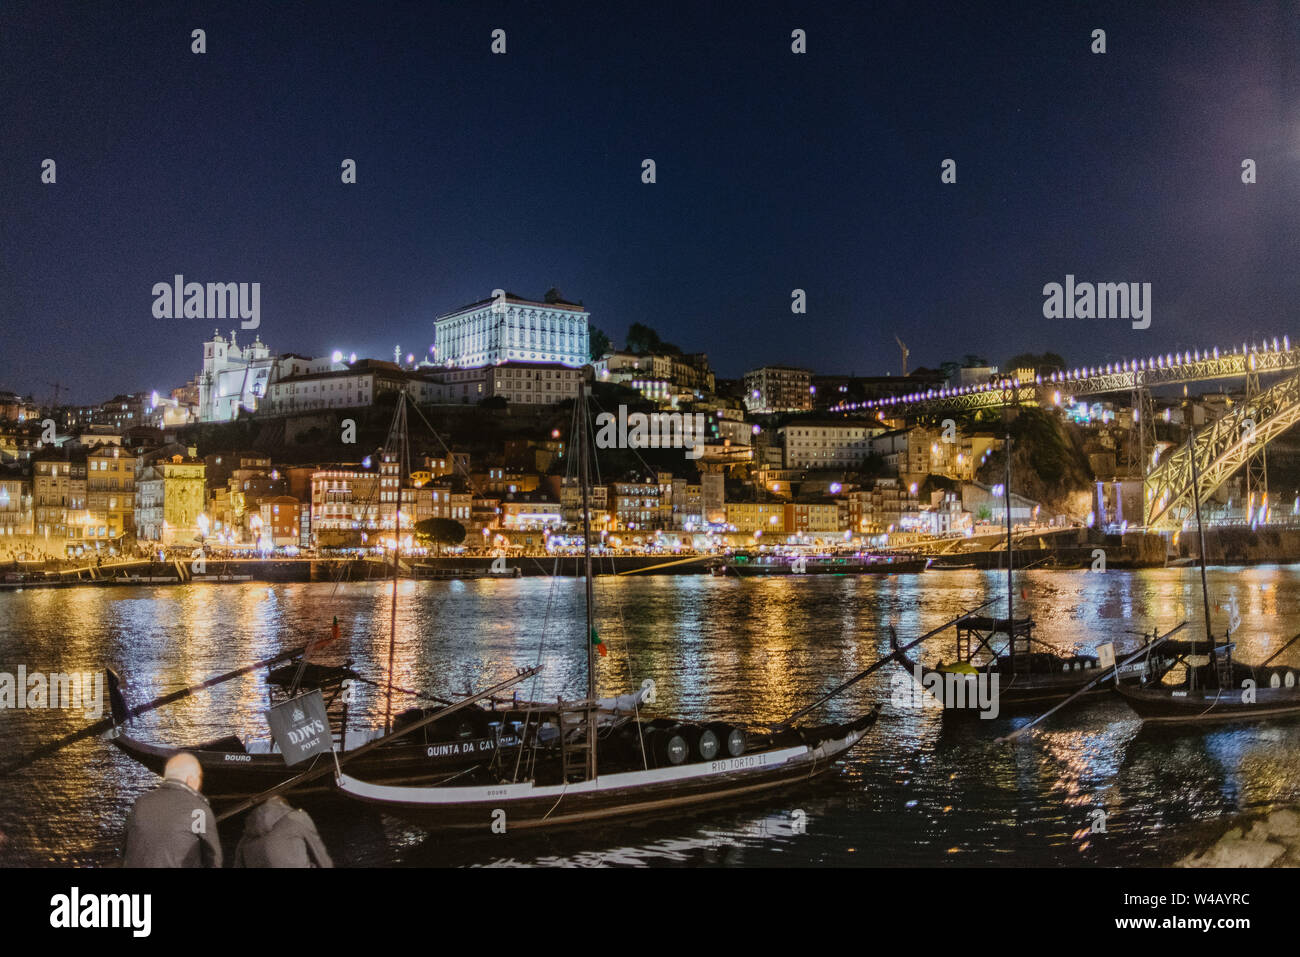 Porto Portugal at night Stock Photo